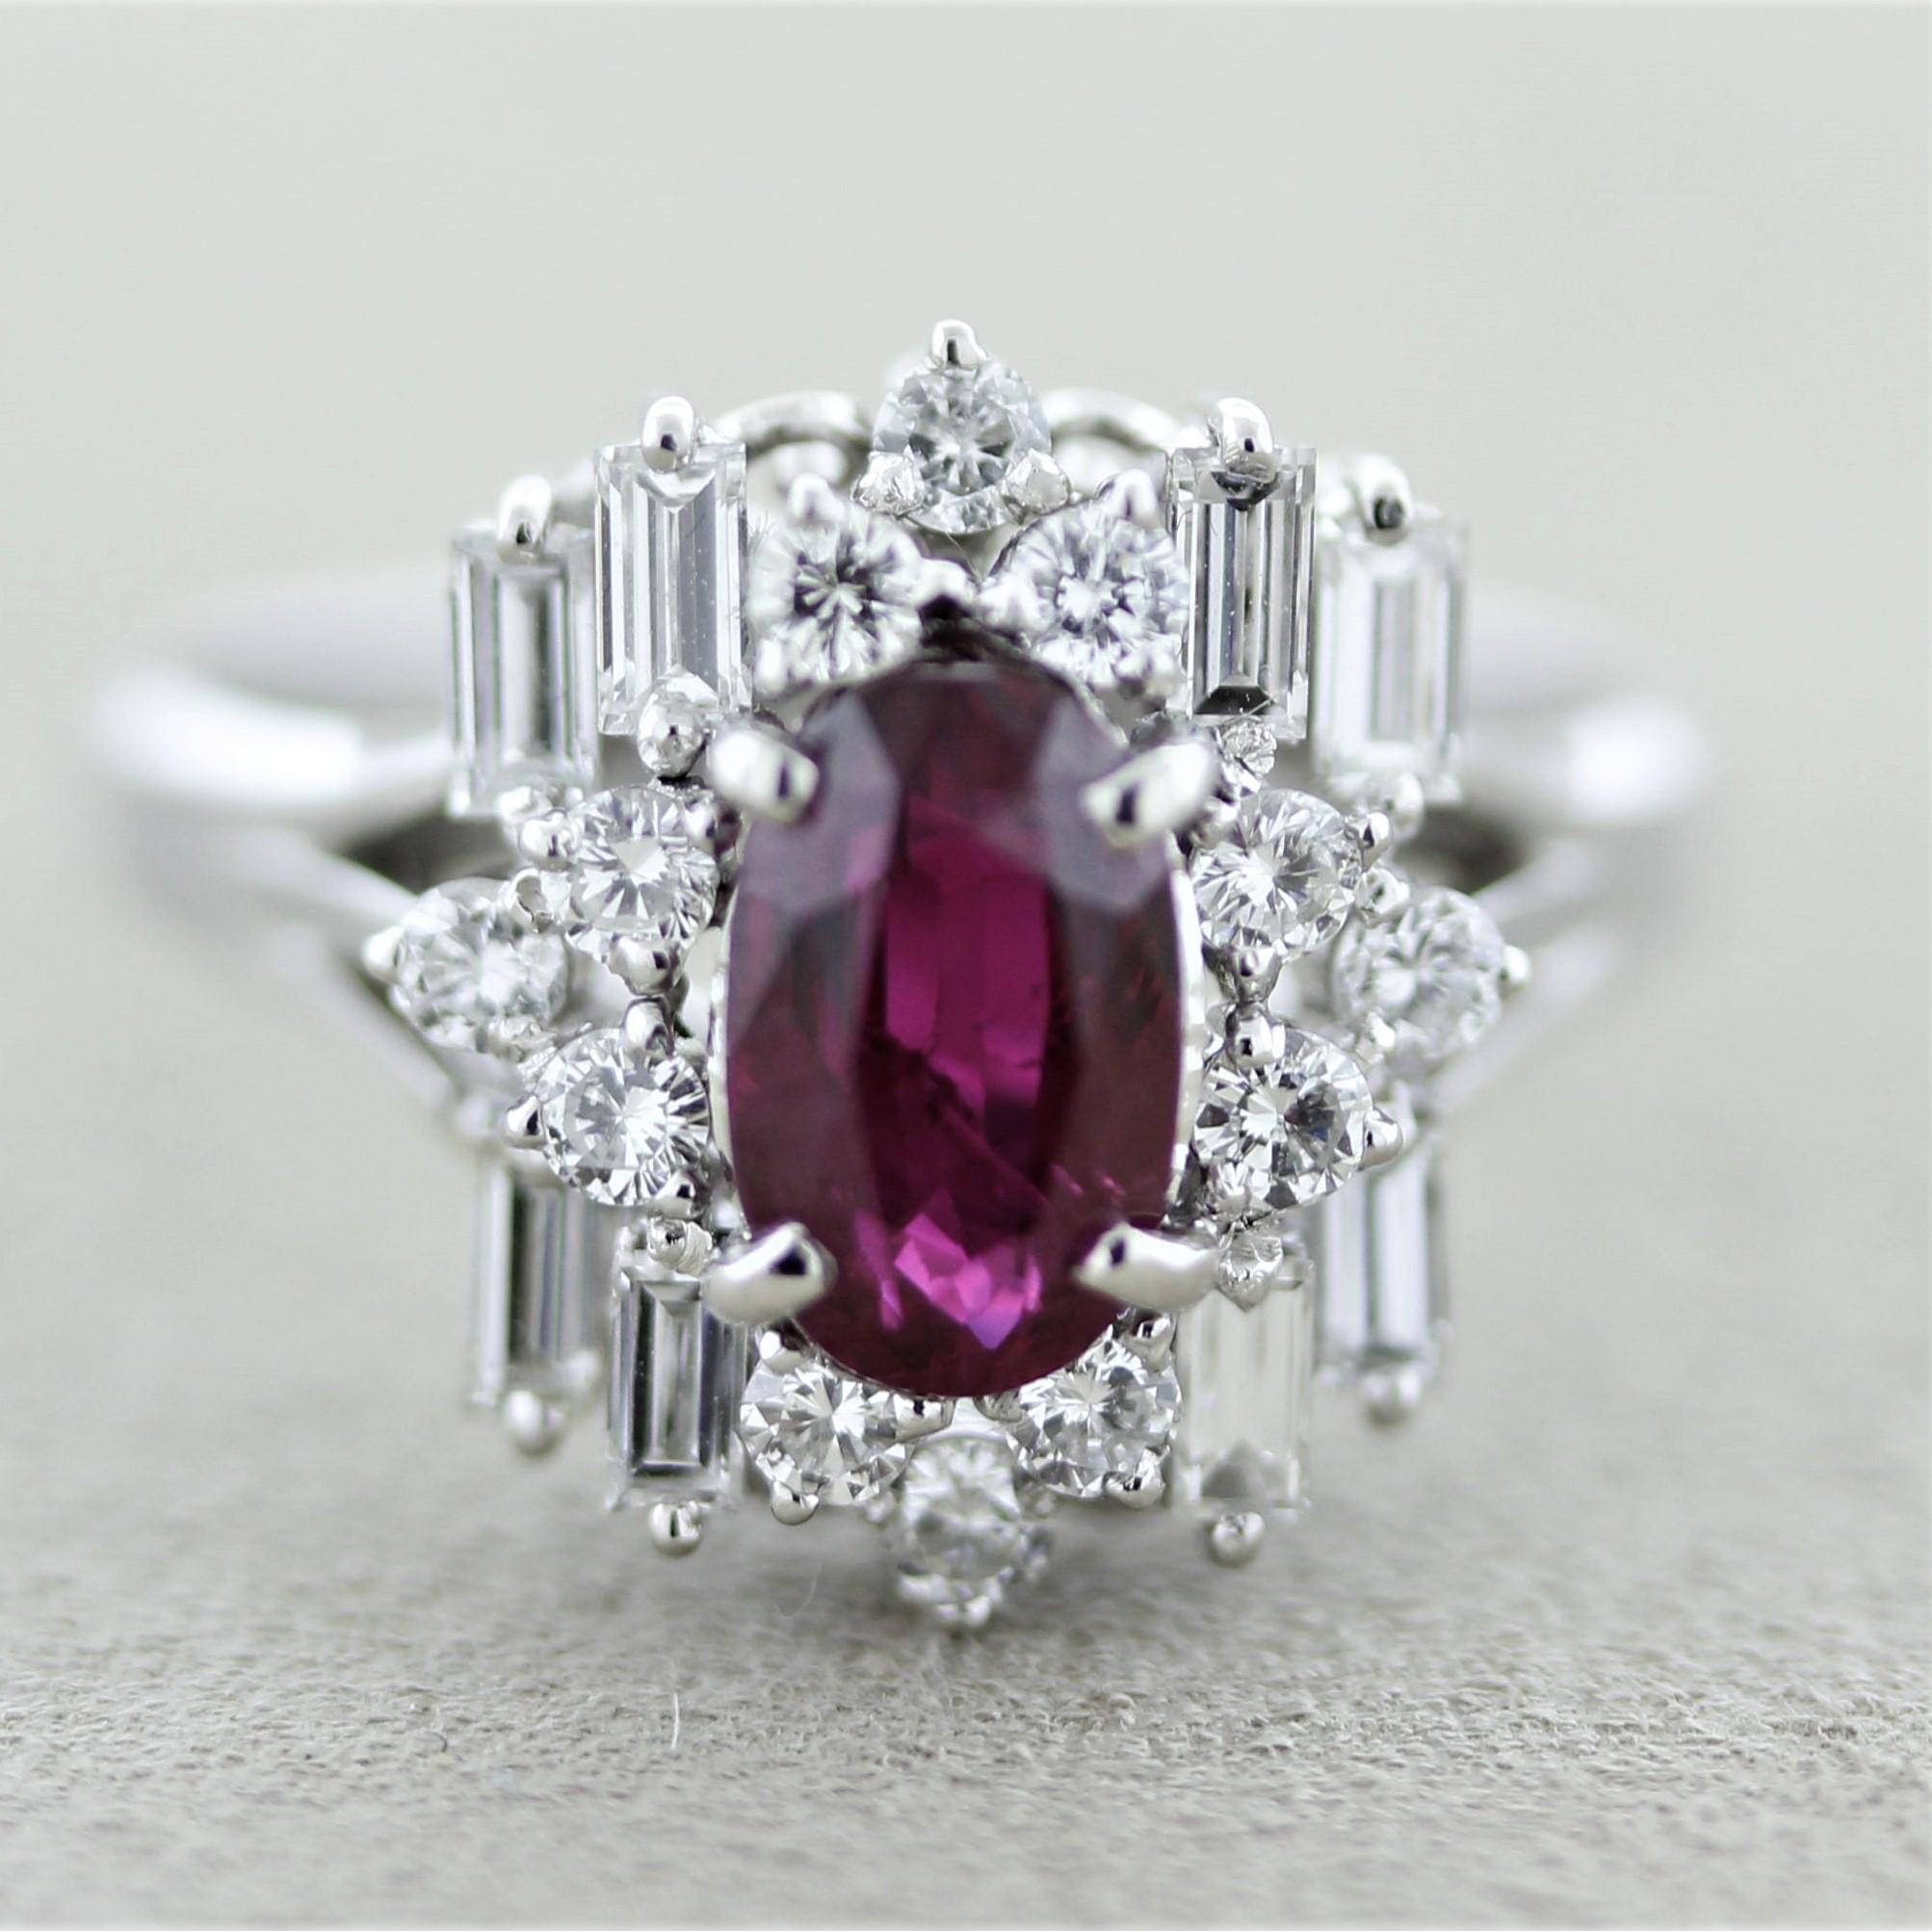 Une bague élégante ornée de pierres fines. Le rubis de forme ovale pèse 1,55 carats et présente une belle couleur rouge royal. Il est complété par 0,88 carats de diamants ronds de taille brillant et de gros diamants de taille baguette sertis autour